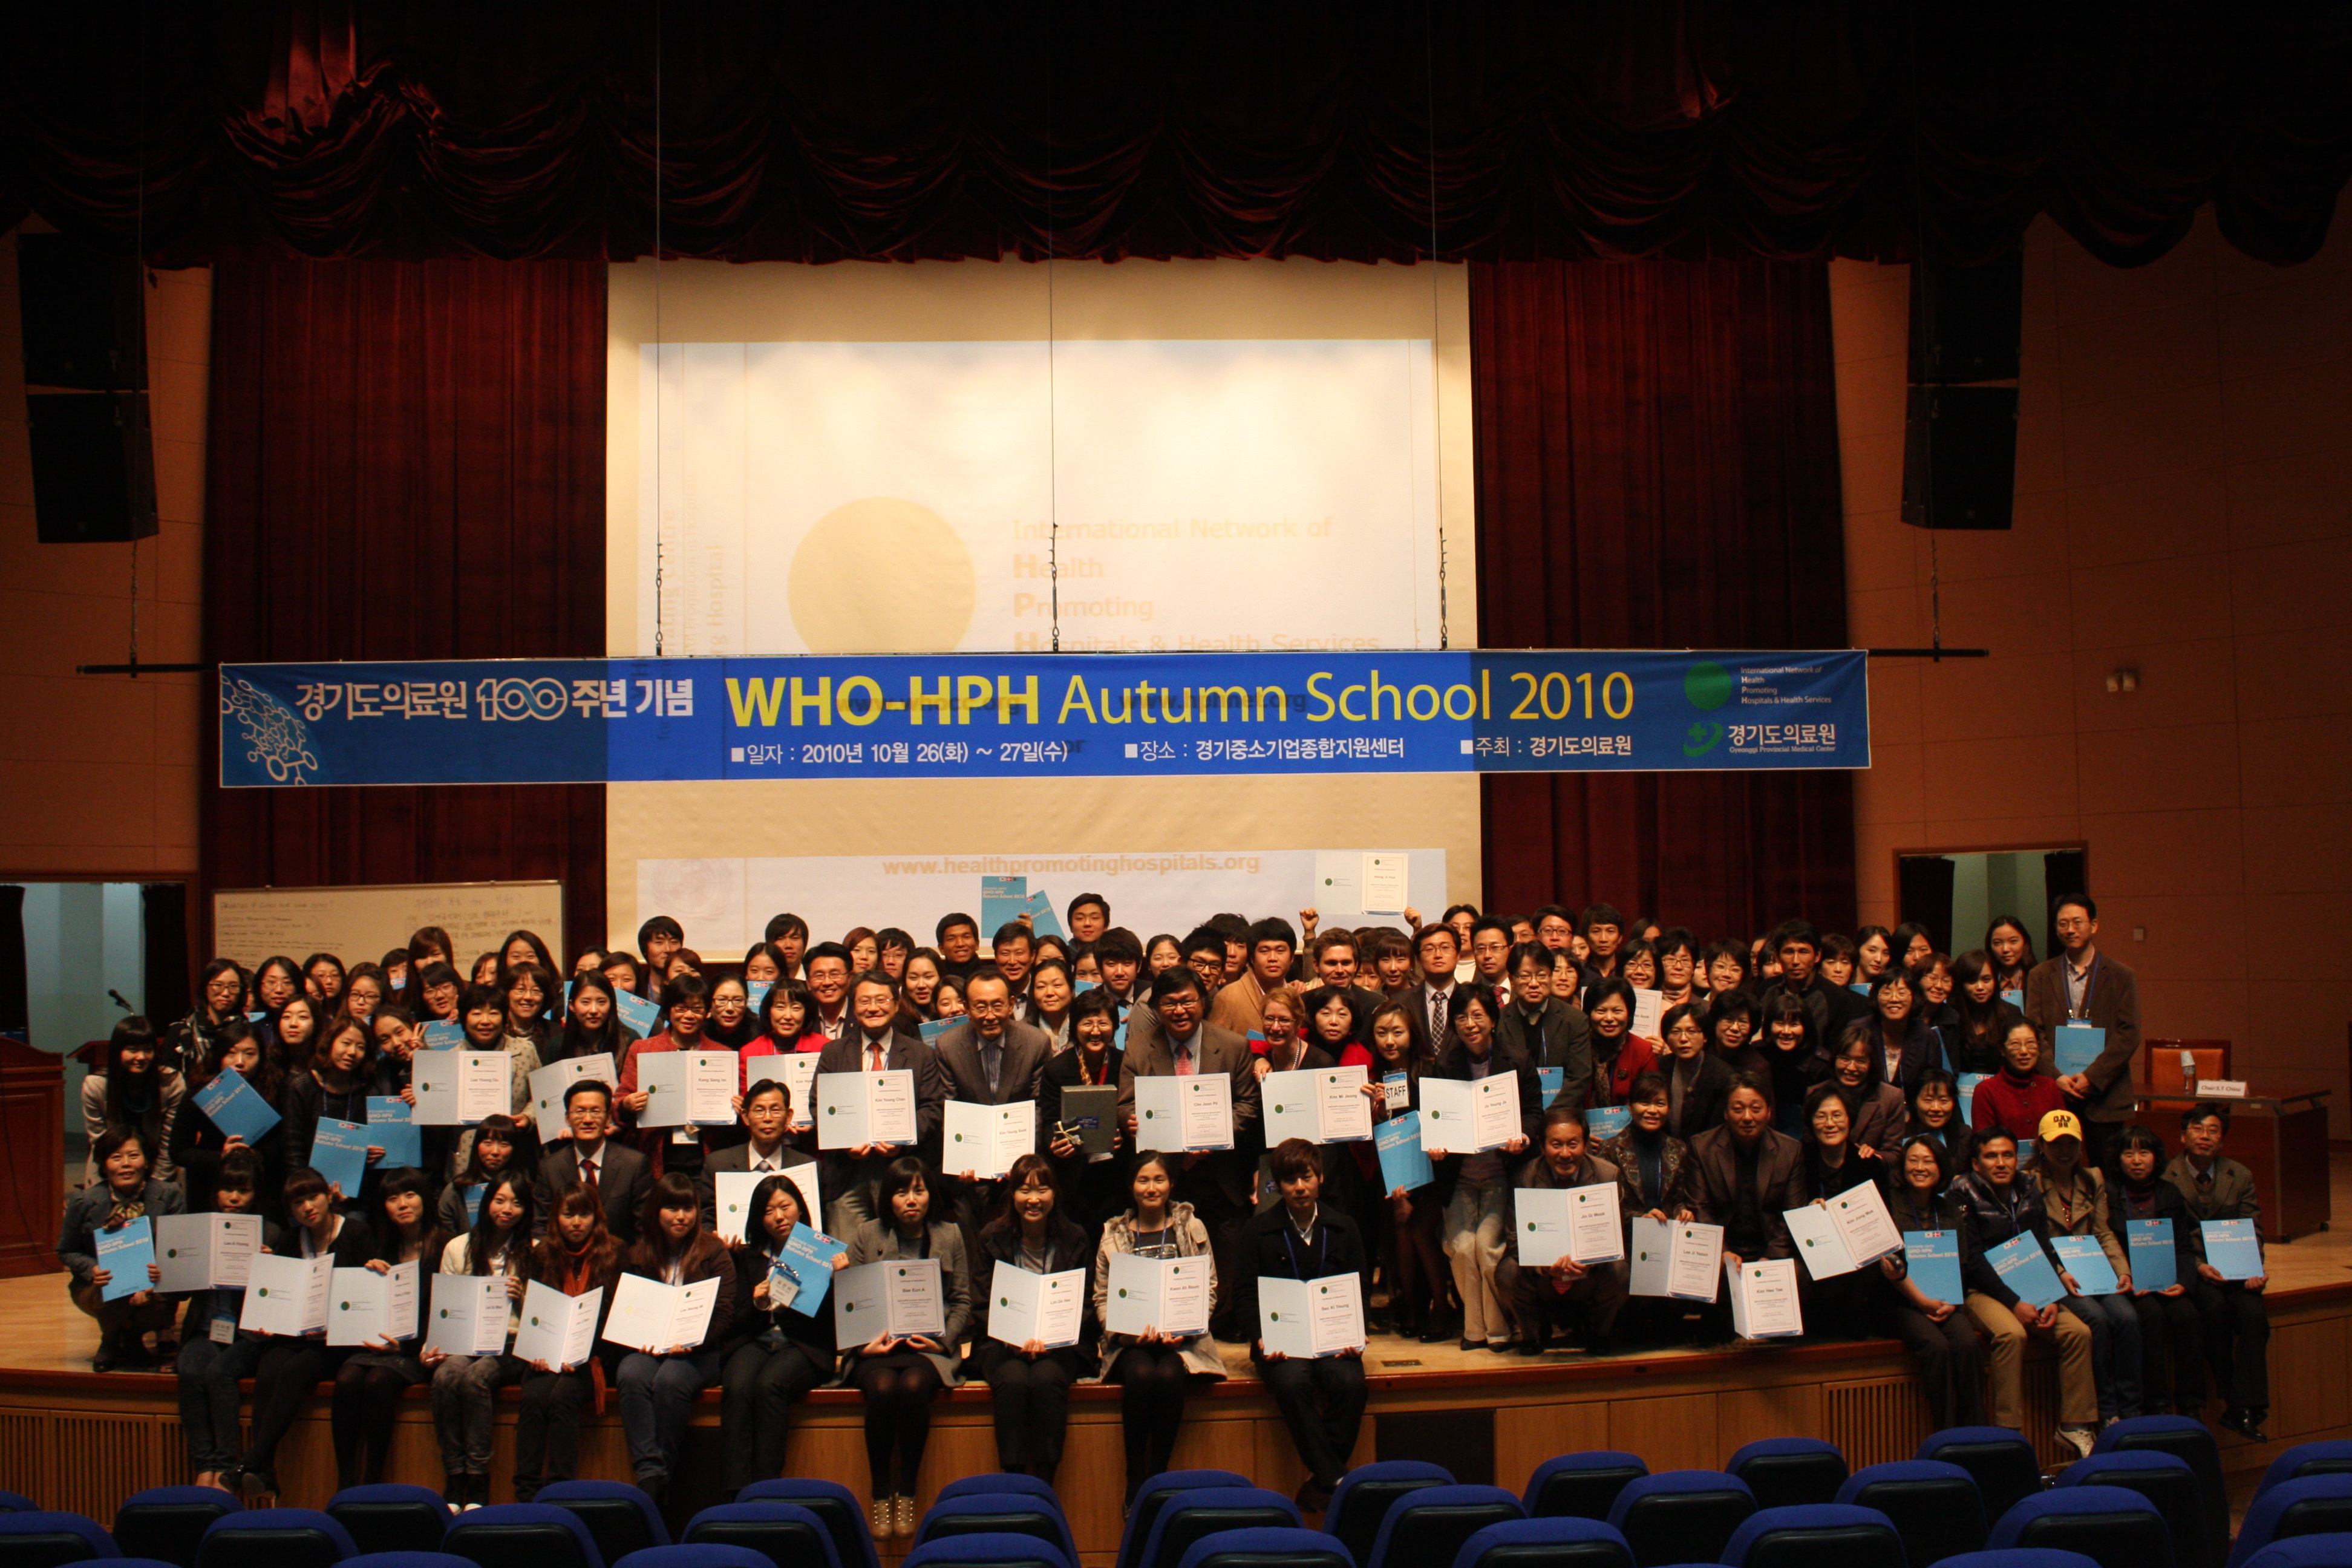 WHO-HPH Autumn School 2010 성황리 개최 .